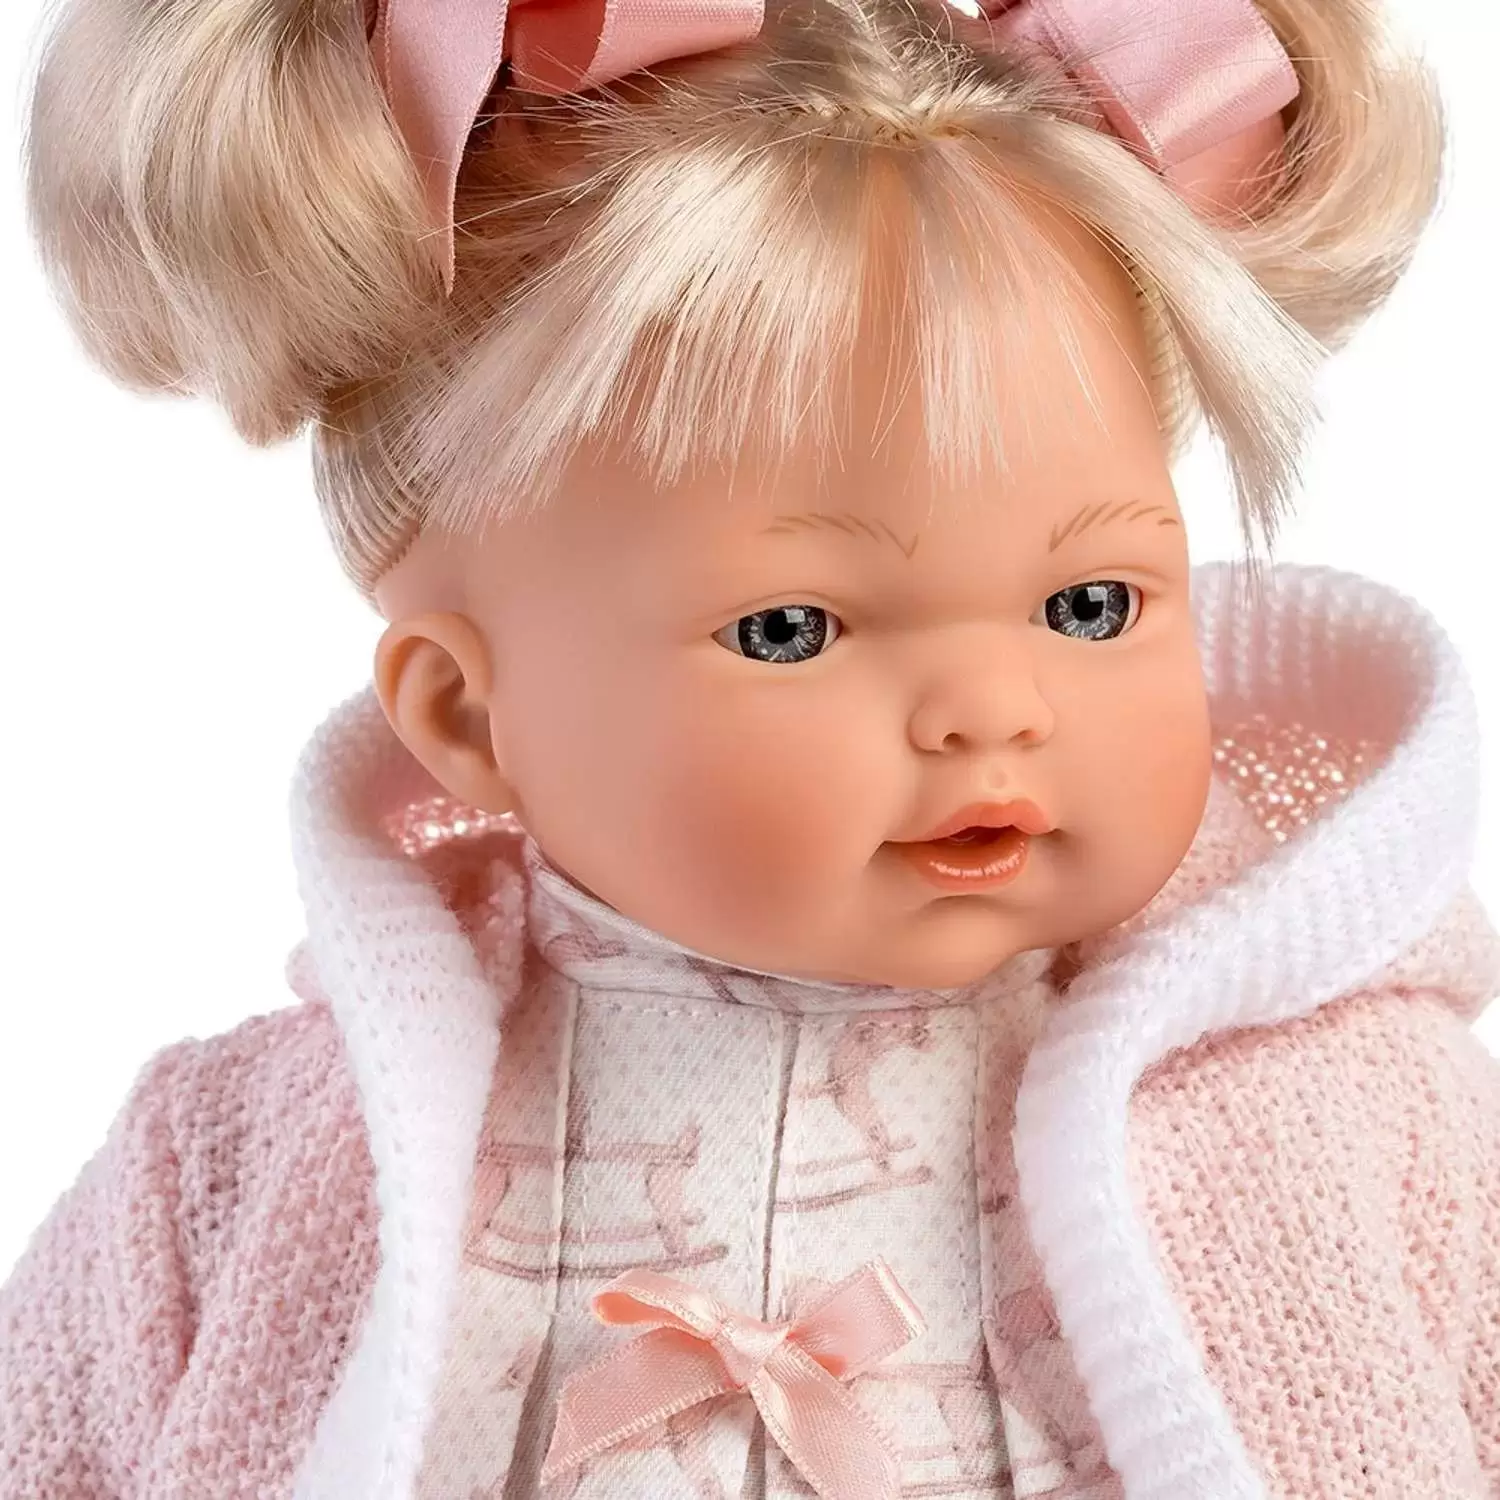 Кукла LLorens Роберта 33см блондинка в розов наряде